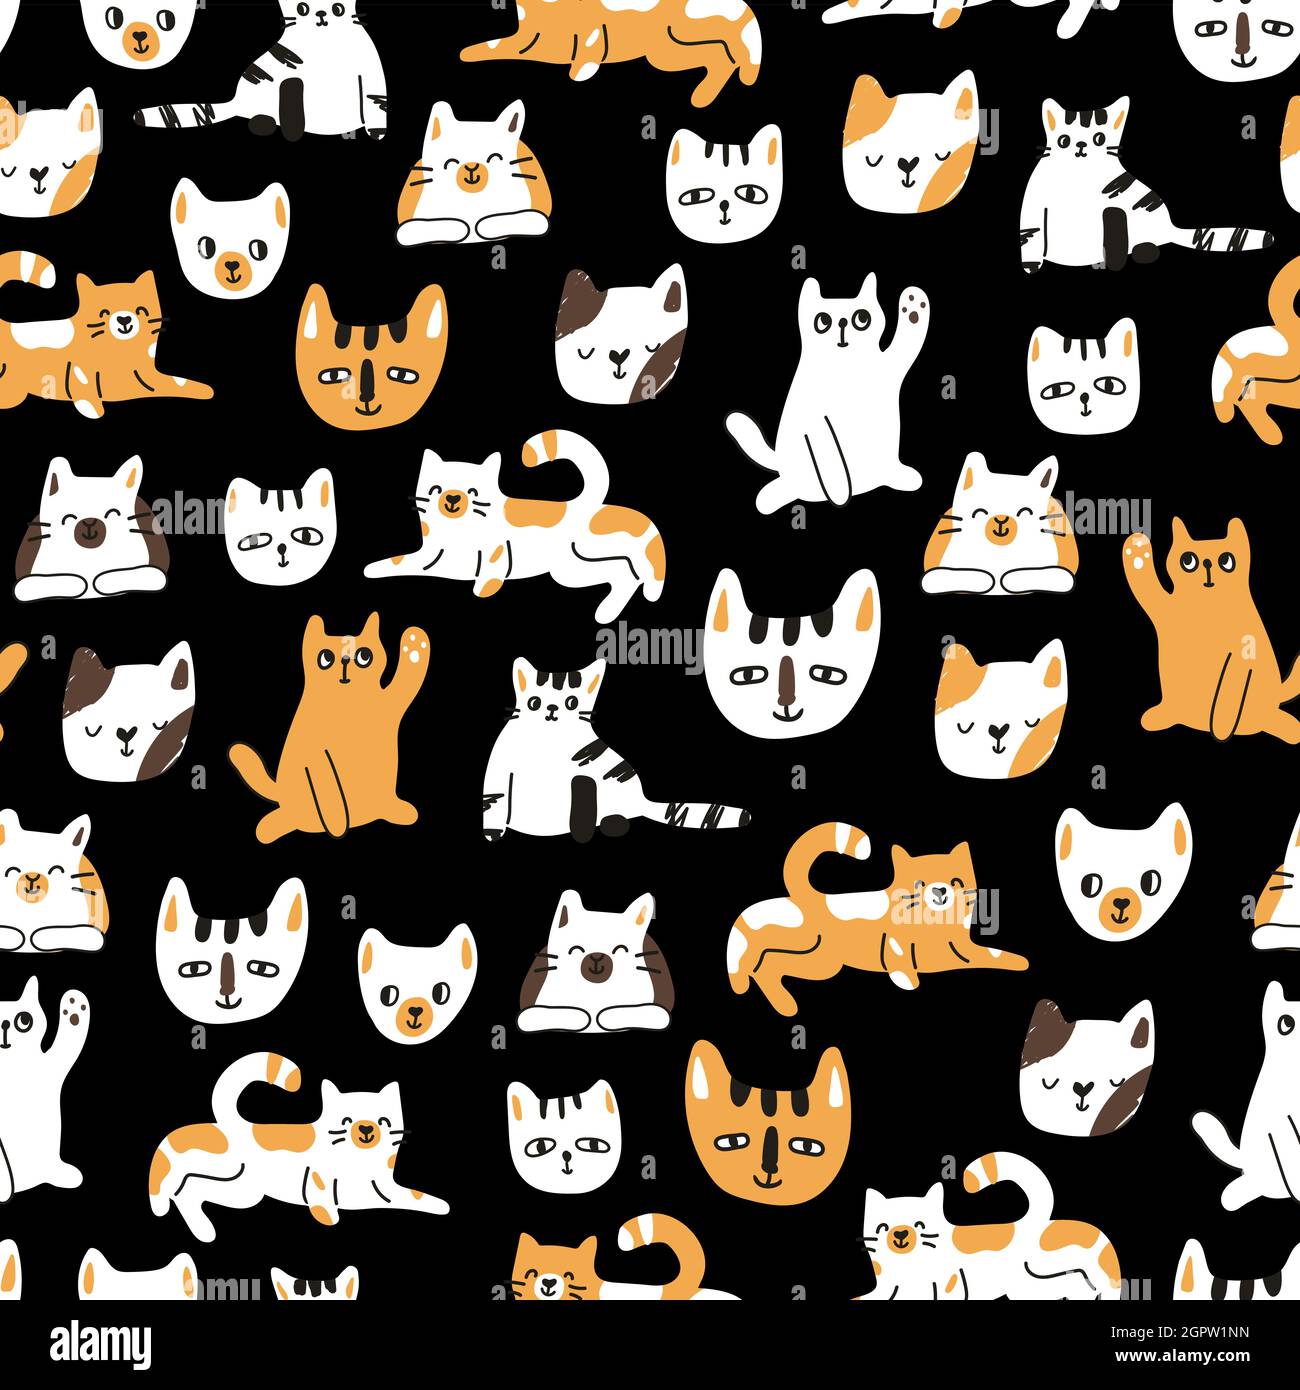 Joli motif amusant sans couture de chats ou de chatons sur fond noir. Illustration vectorielle des animaux domestiques. Peut être utilisé pour les livres pour enfants ou comme prin Illustration de Vecteur